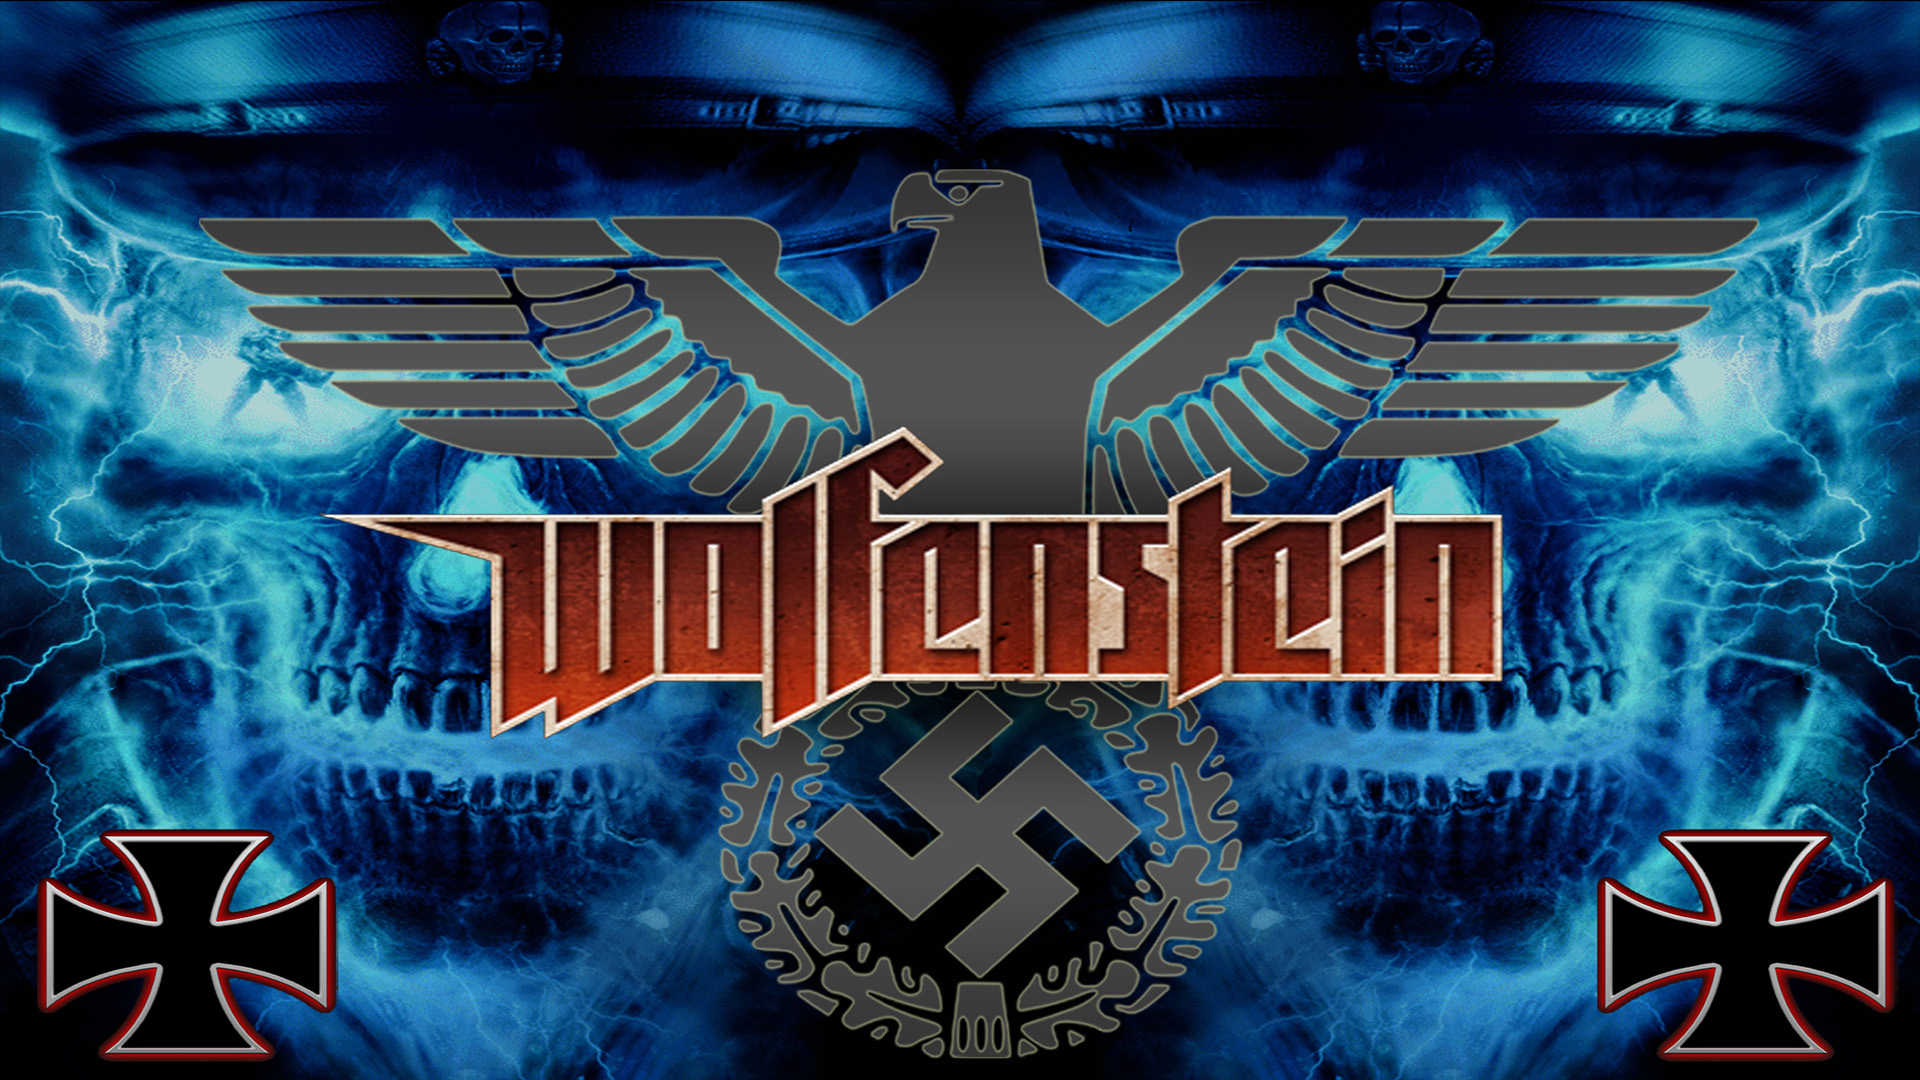 Free download wallpaper Video Game, Wolfenstein on your PC desktop